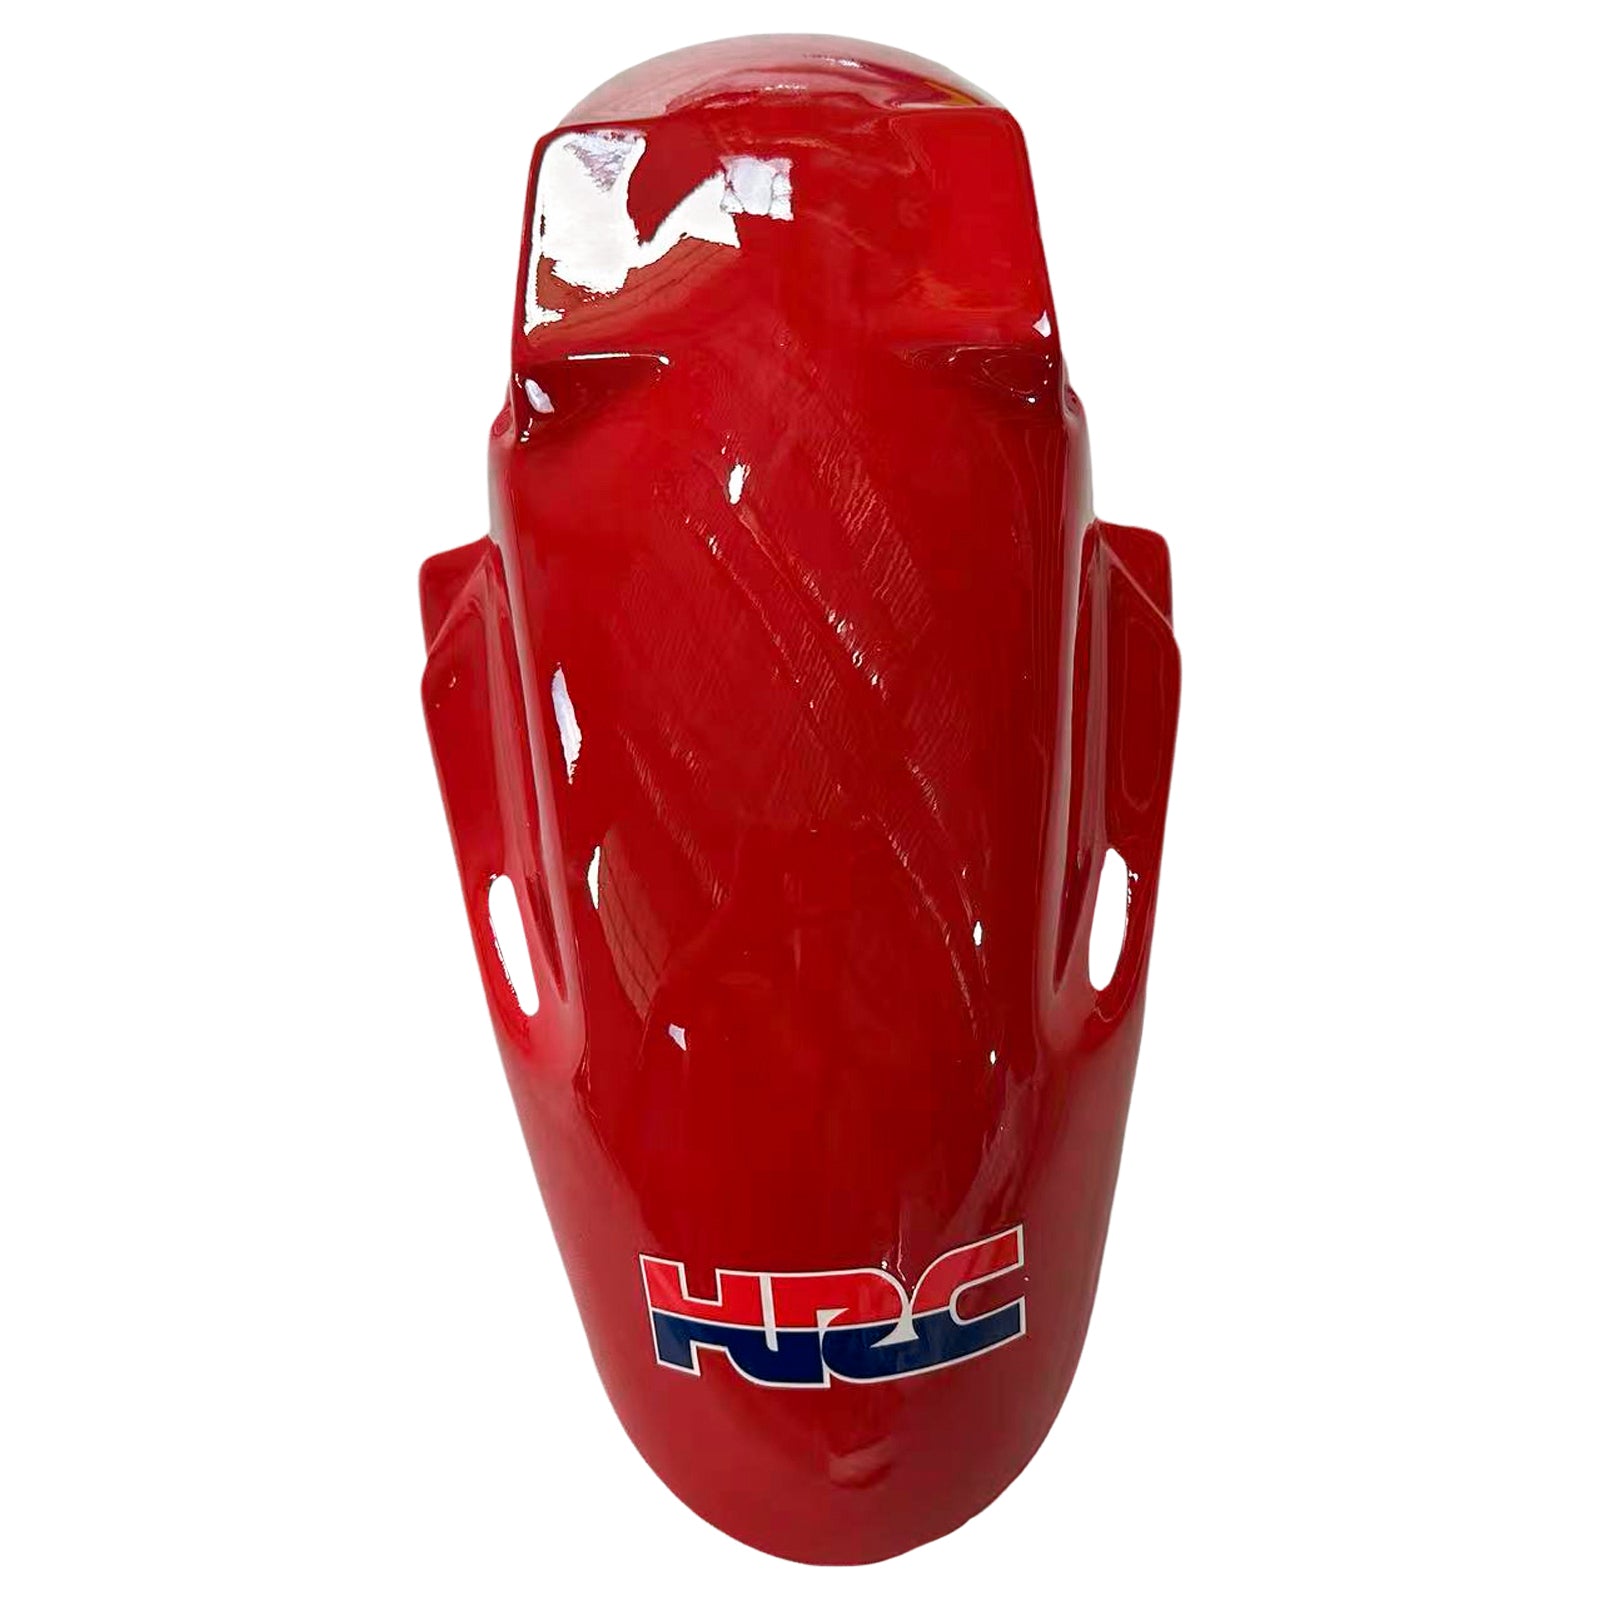 Amotopart 1998-1999 Honda CBR900RR 919 Fairing Blue&Red Kit